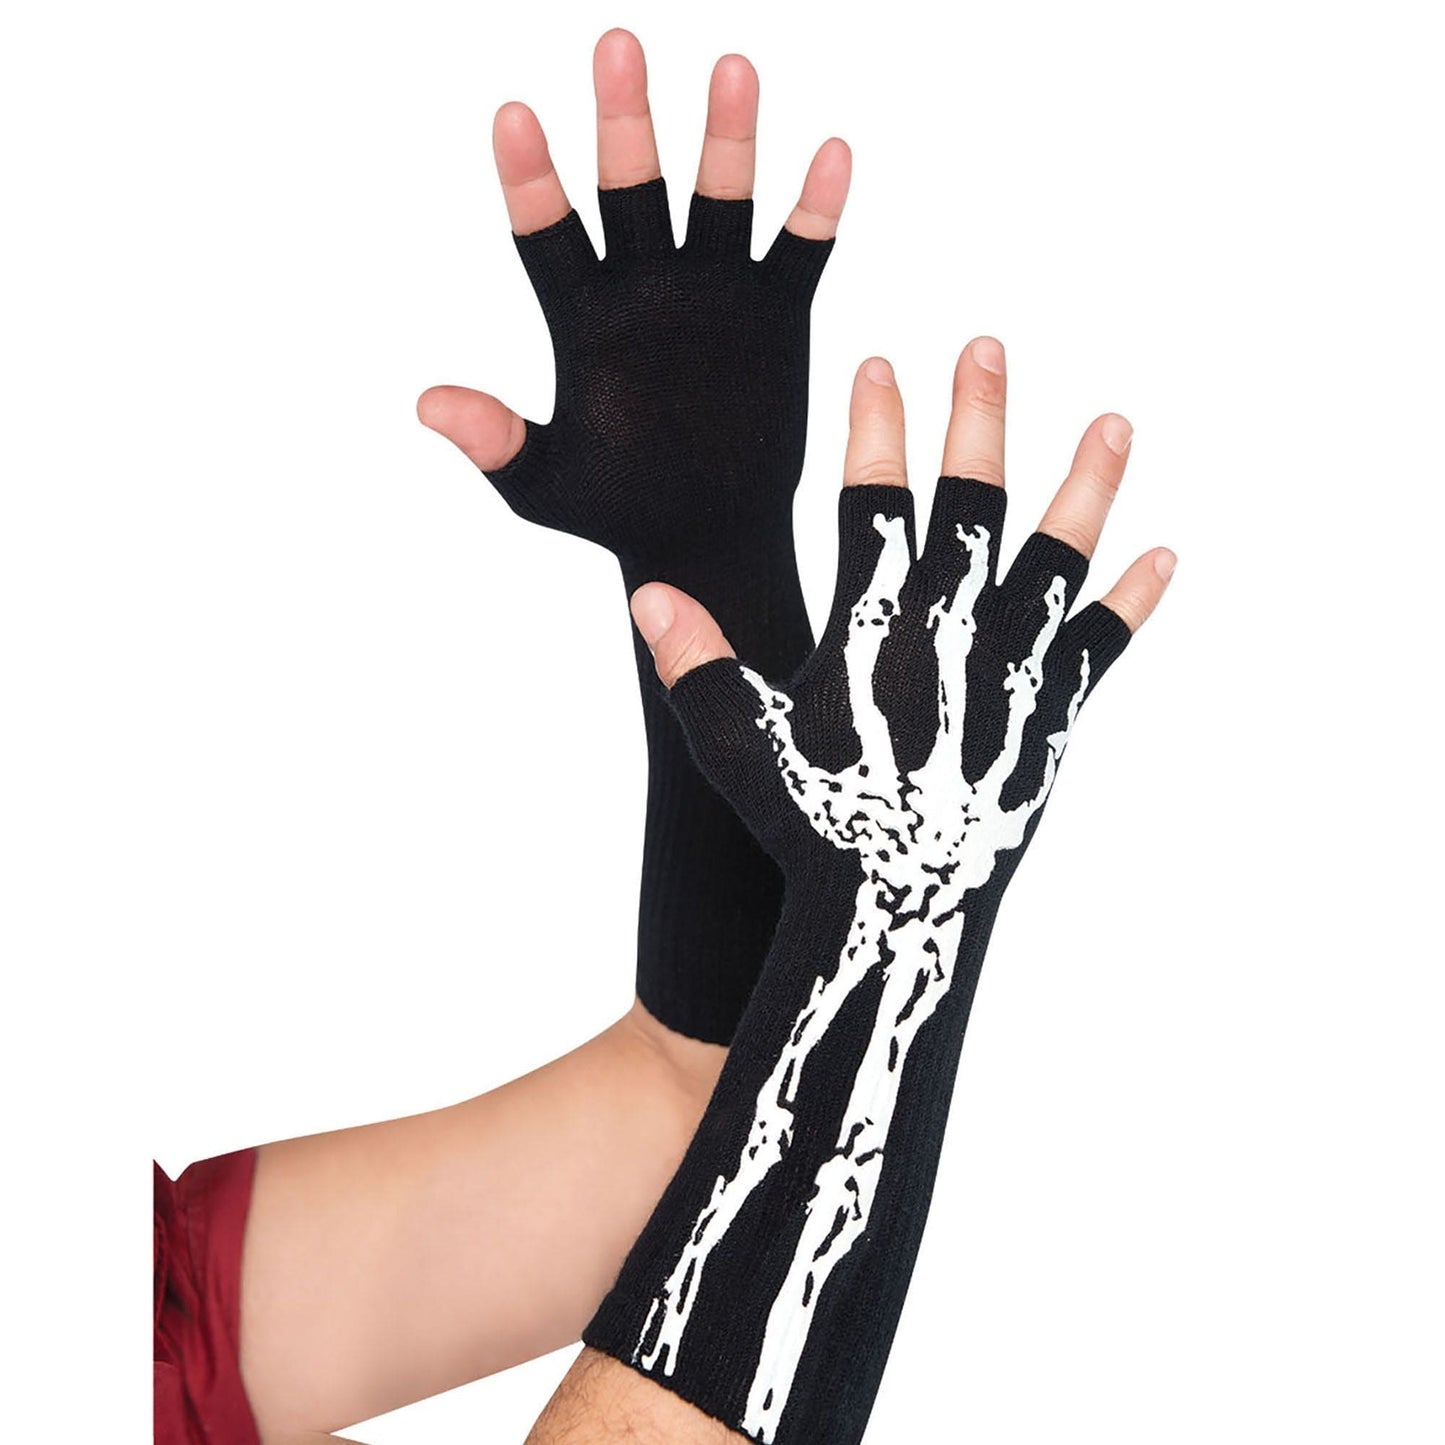 Skeleton Glow-In-The-Dark Fingerless Gloves